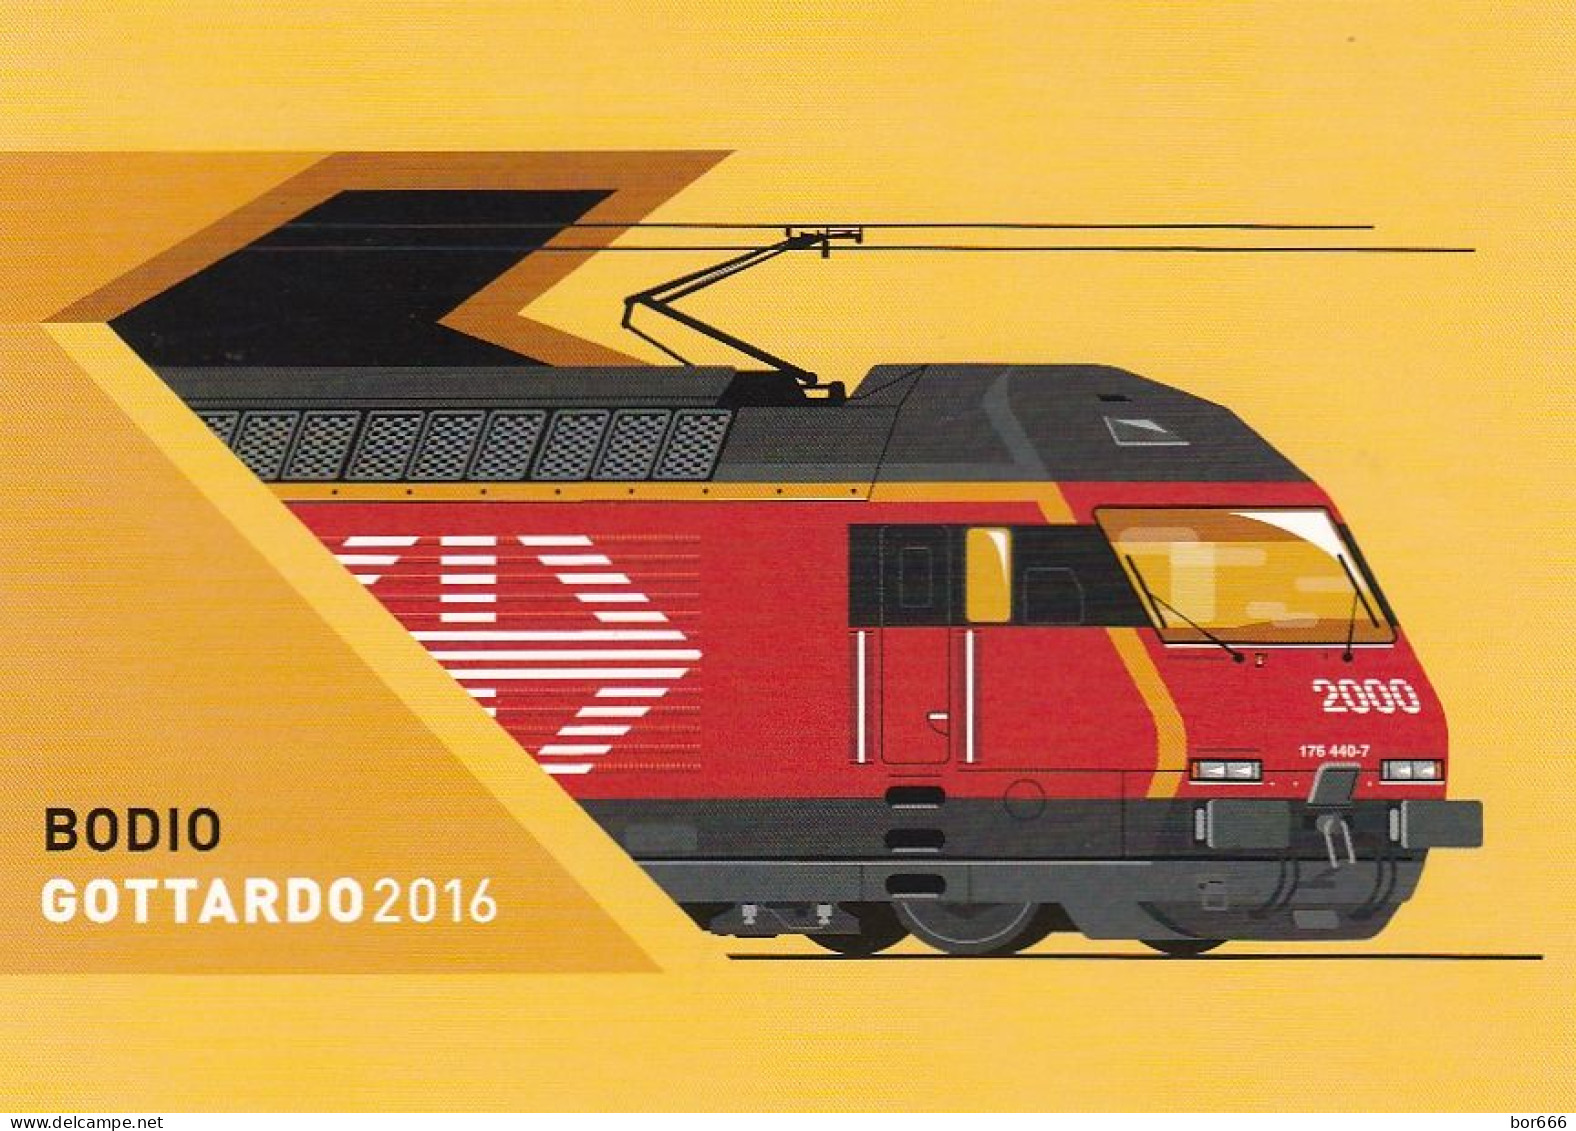 GOOD SWITZERLAND Postcard With Original Stamp 2016 - Railway / Gottardo - Ferrovie